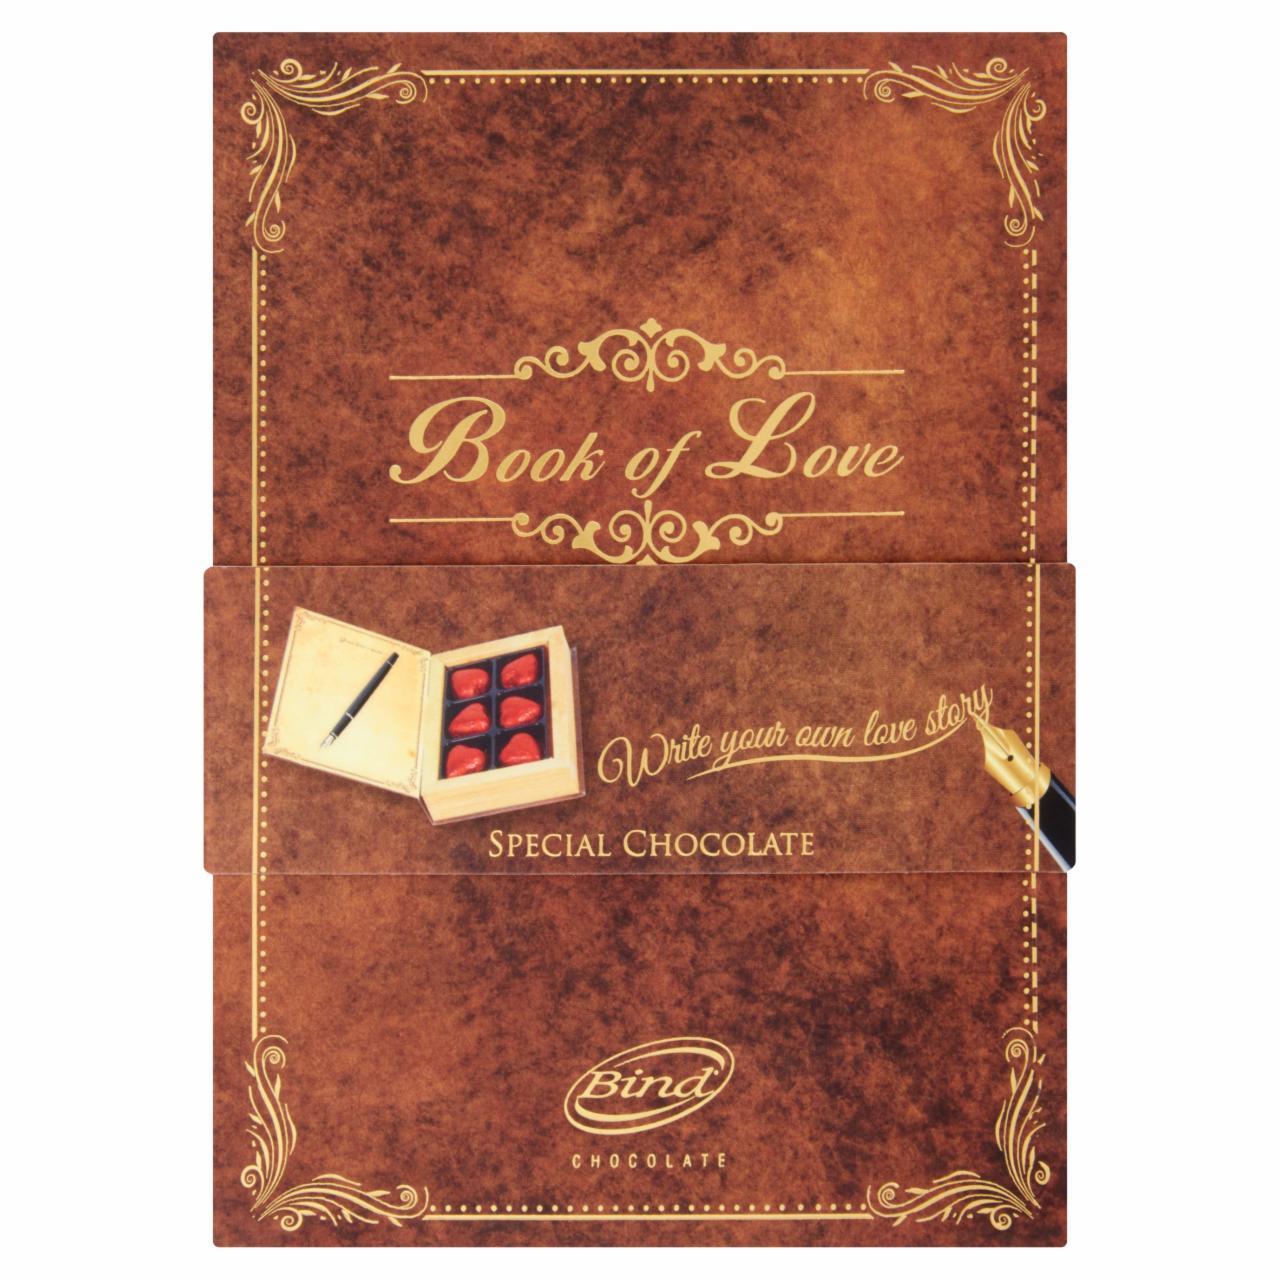 Képek - Bind Book of Love Gianduja mogyorós tejcsokoládéval töltött tejcsokoládé 6 db 90 g